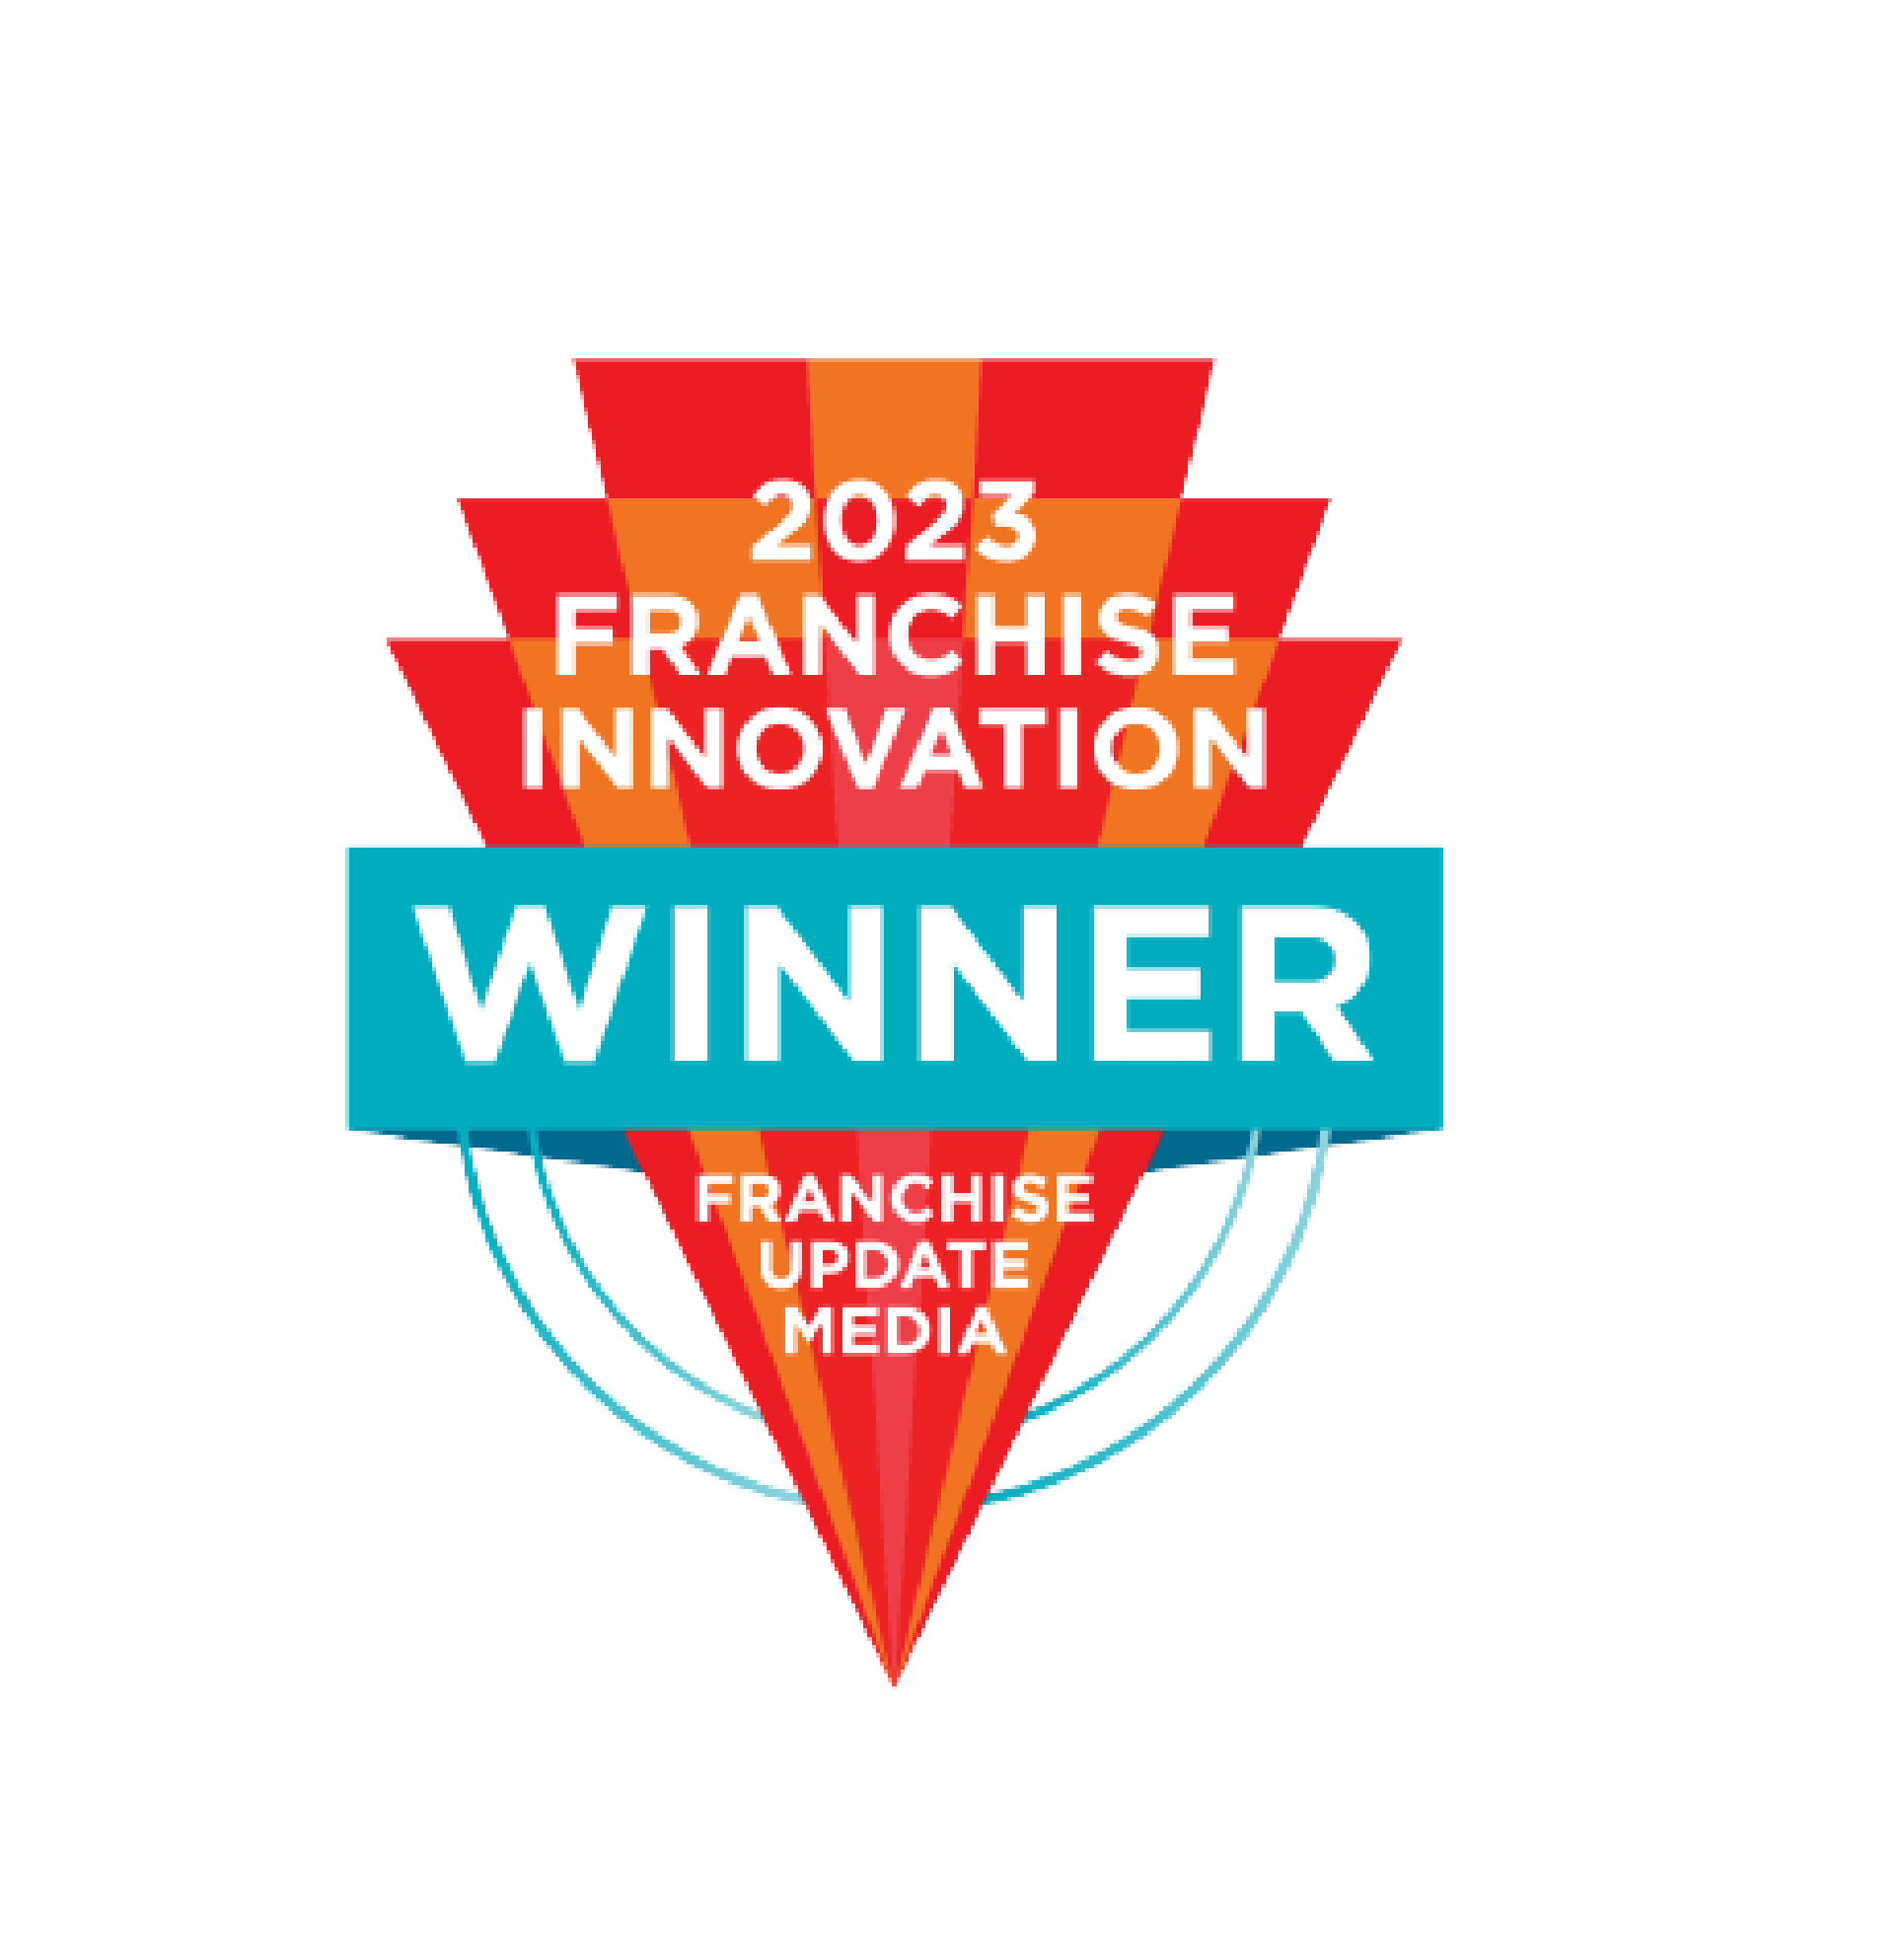 Franchise innovation winner award